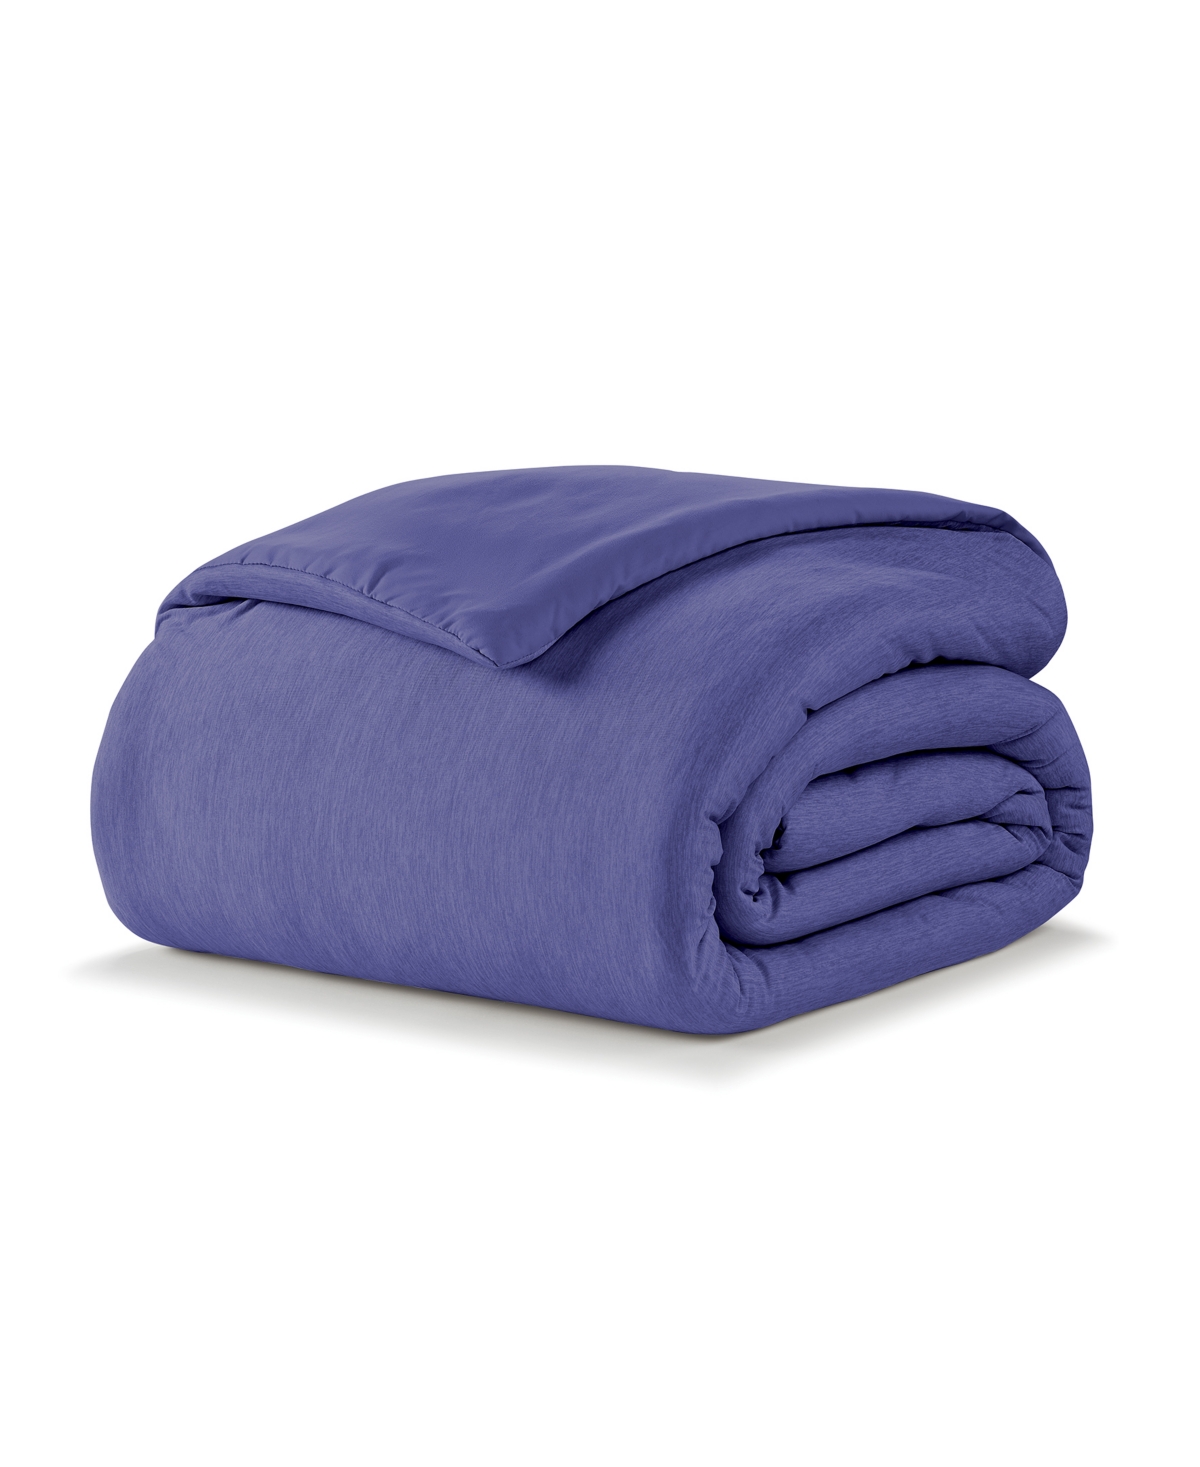 Ella Jayne Cooling Jersey Down-alternative Comforter, Twin In Blue